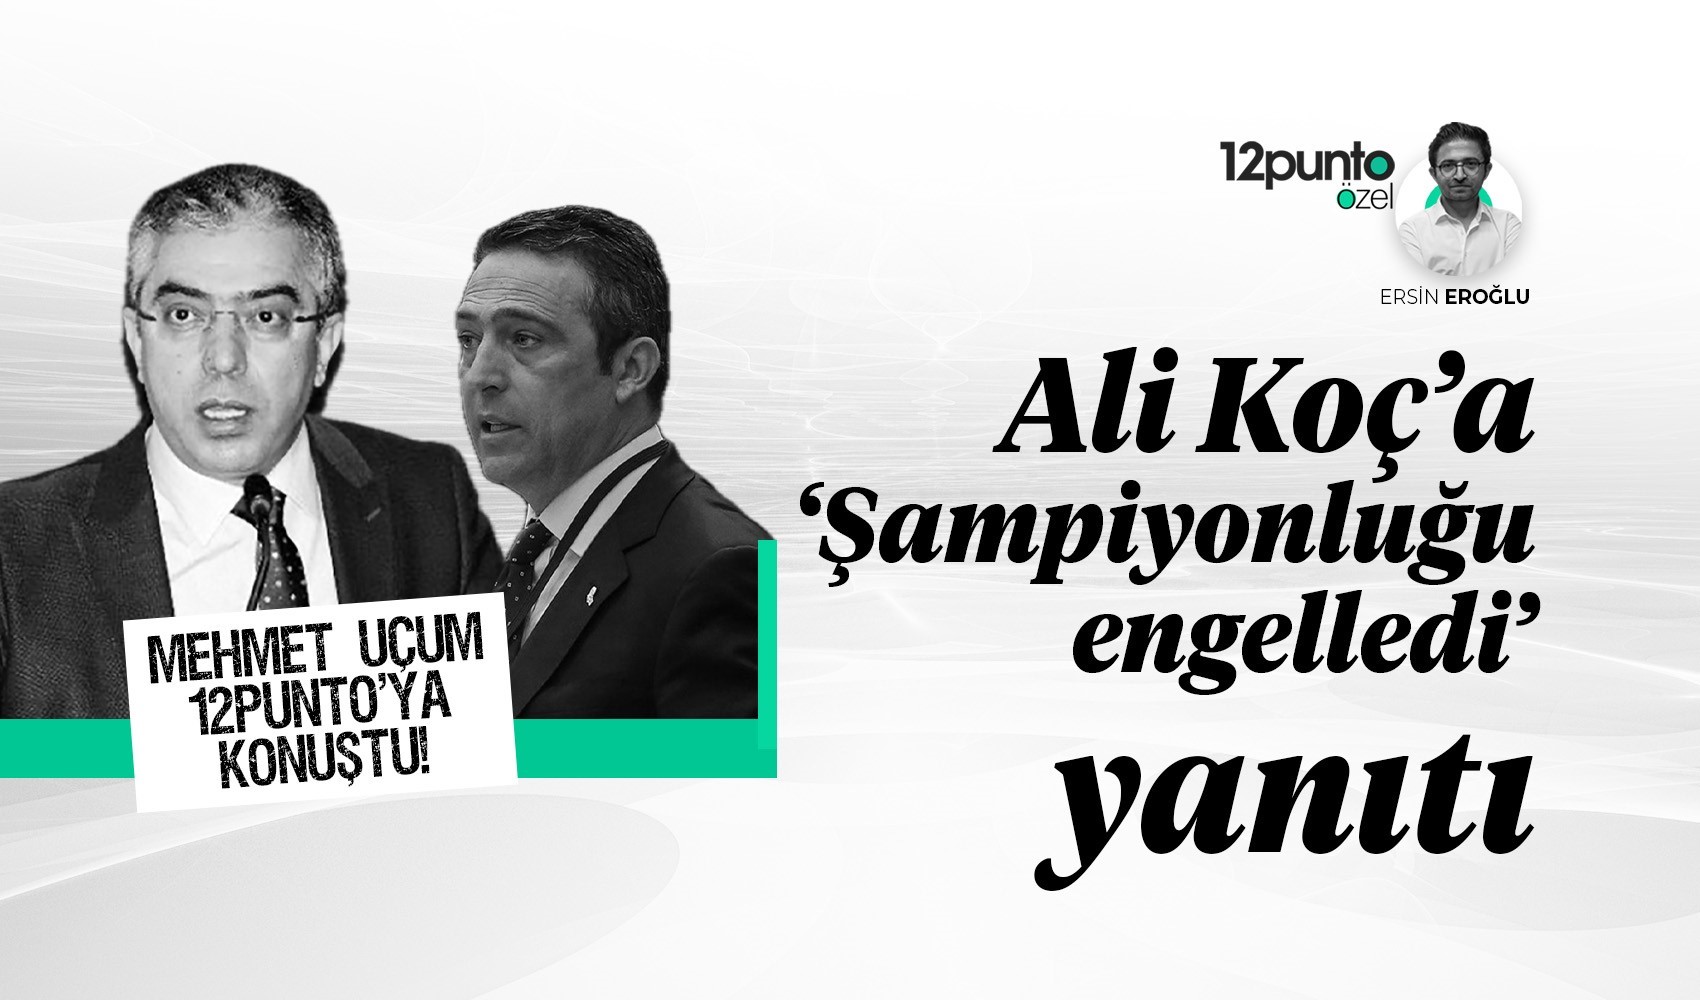 Mehmet Uçum 12punto'ya konuştu: Ali Koç'a 'şampiyonluğu engelledi' yanıtı